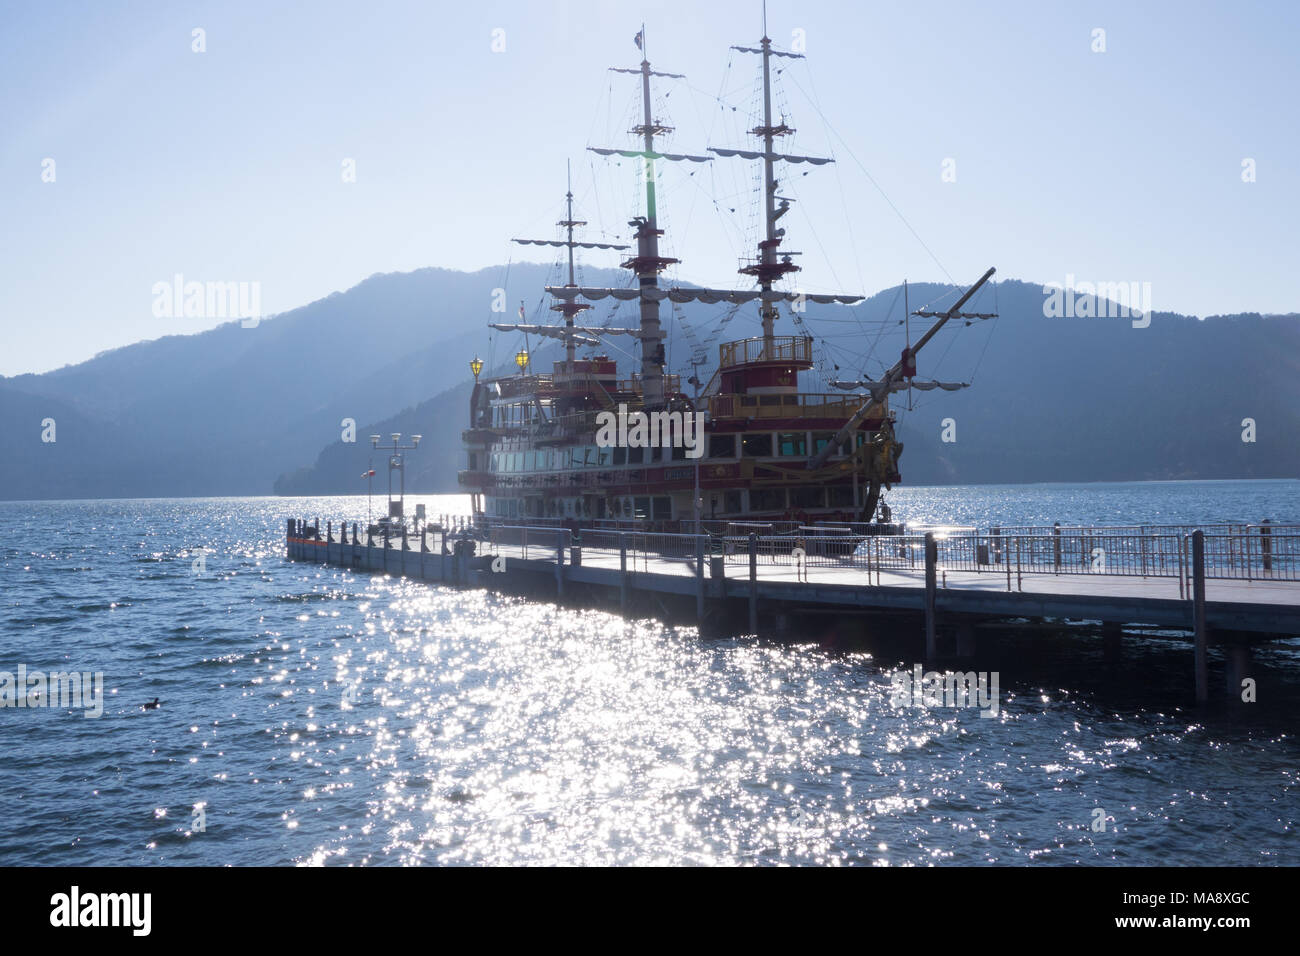 Le bateau pirate sur le lac Ashi, l'une des principales attractions de la région de Hakone au Japon Banque D'Images